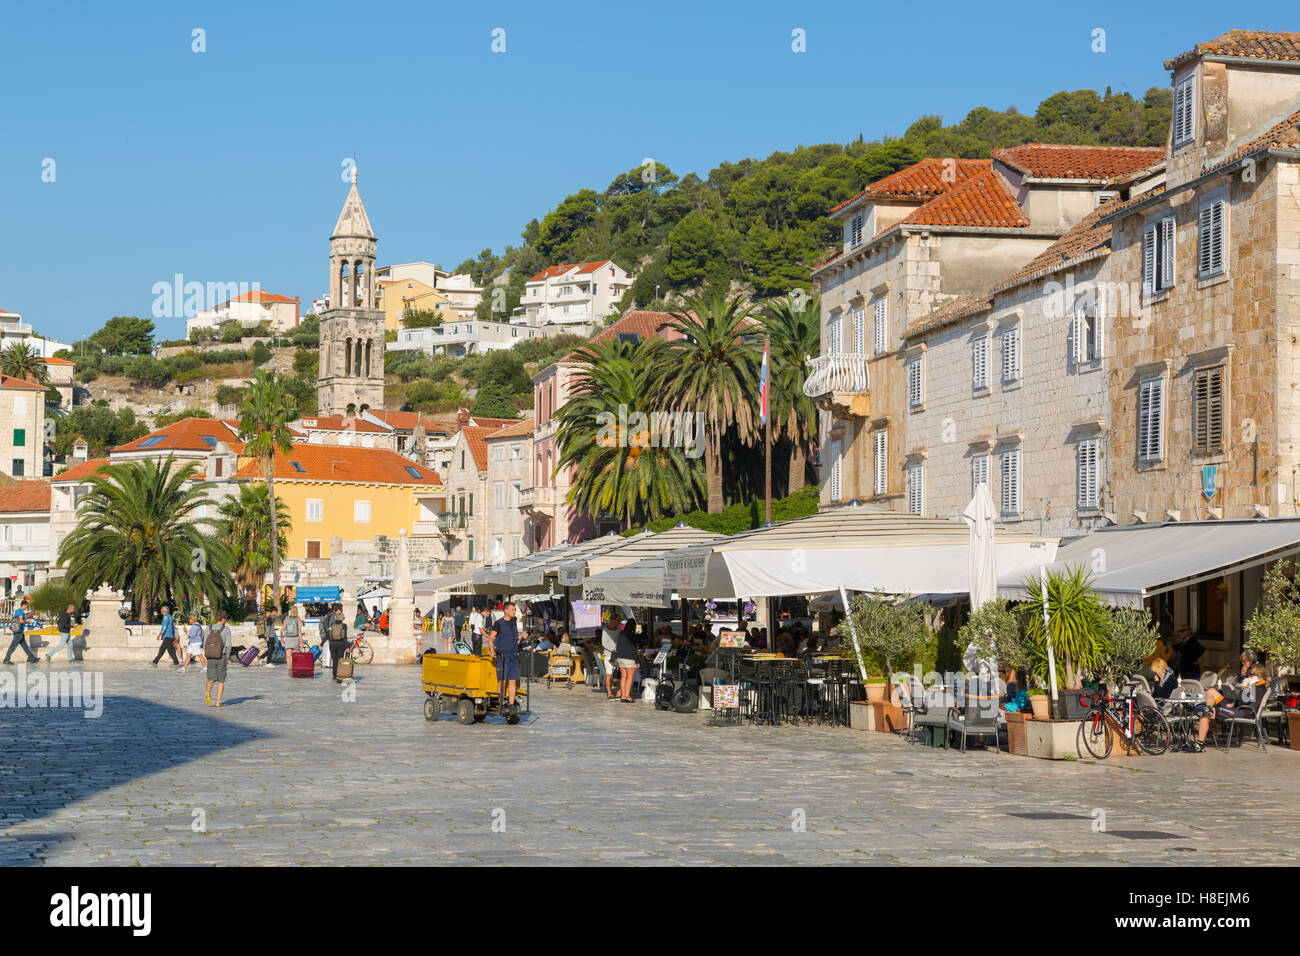 Main Square, Hvar, Hvar Island, Dalmatia, Croatia, Europe Stock Photo